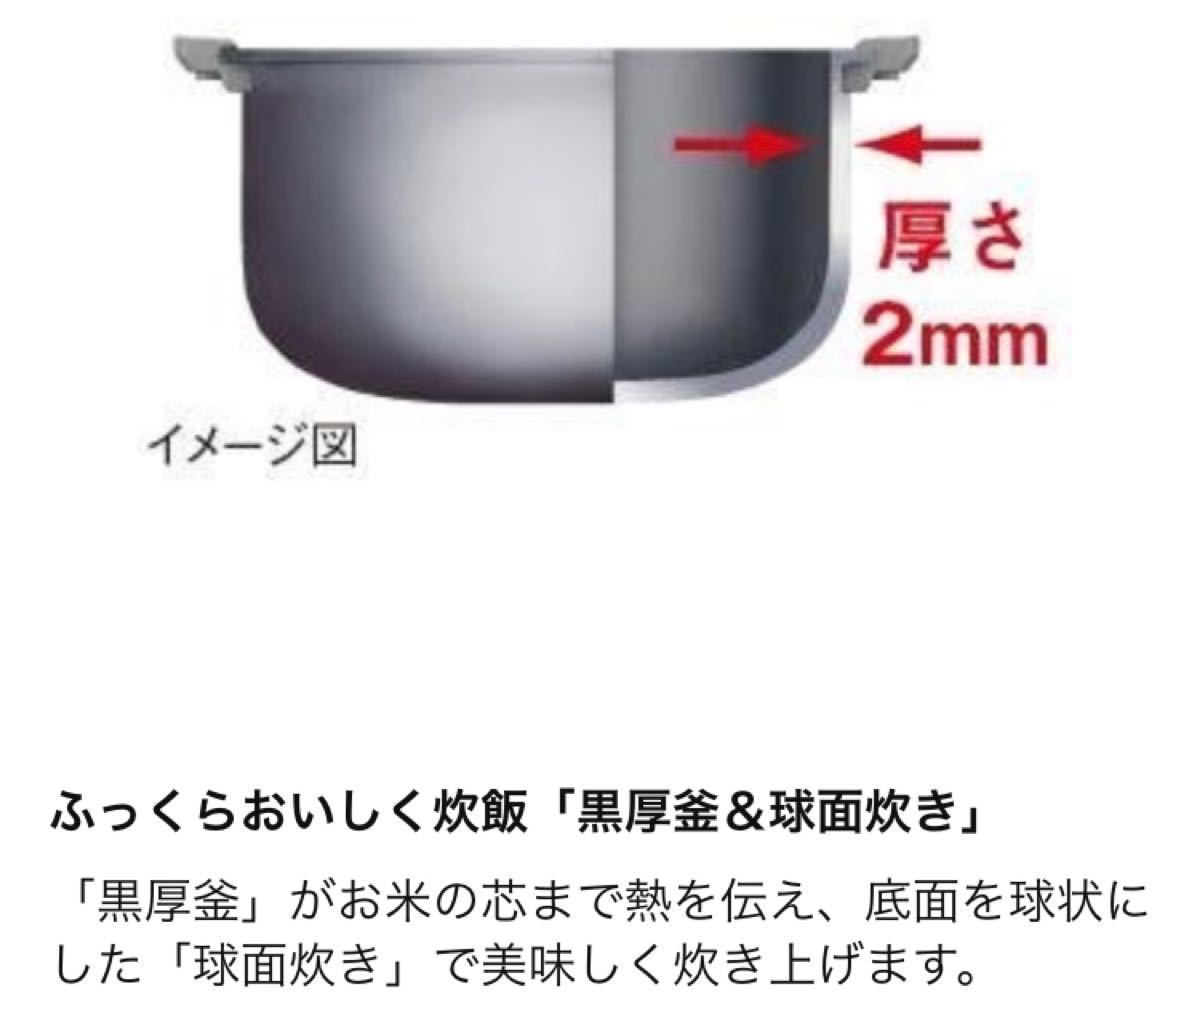 【新品未開封】シャープ 炊飯器 黒厚釜 5.5合 シルバー KS-S10J-S